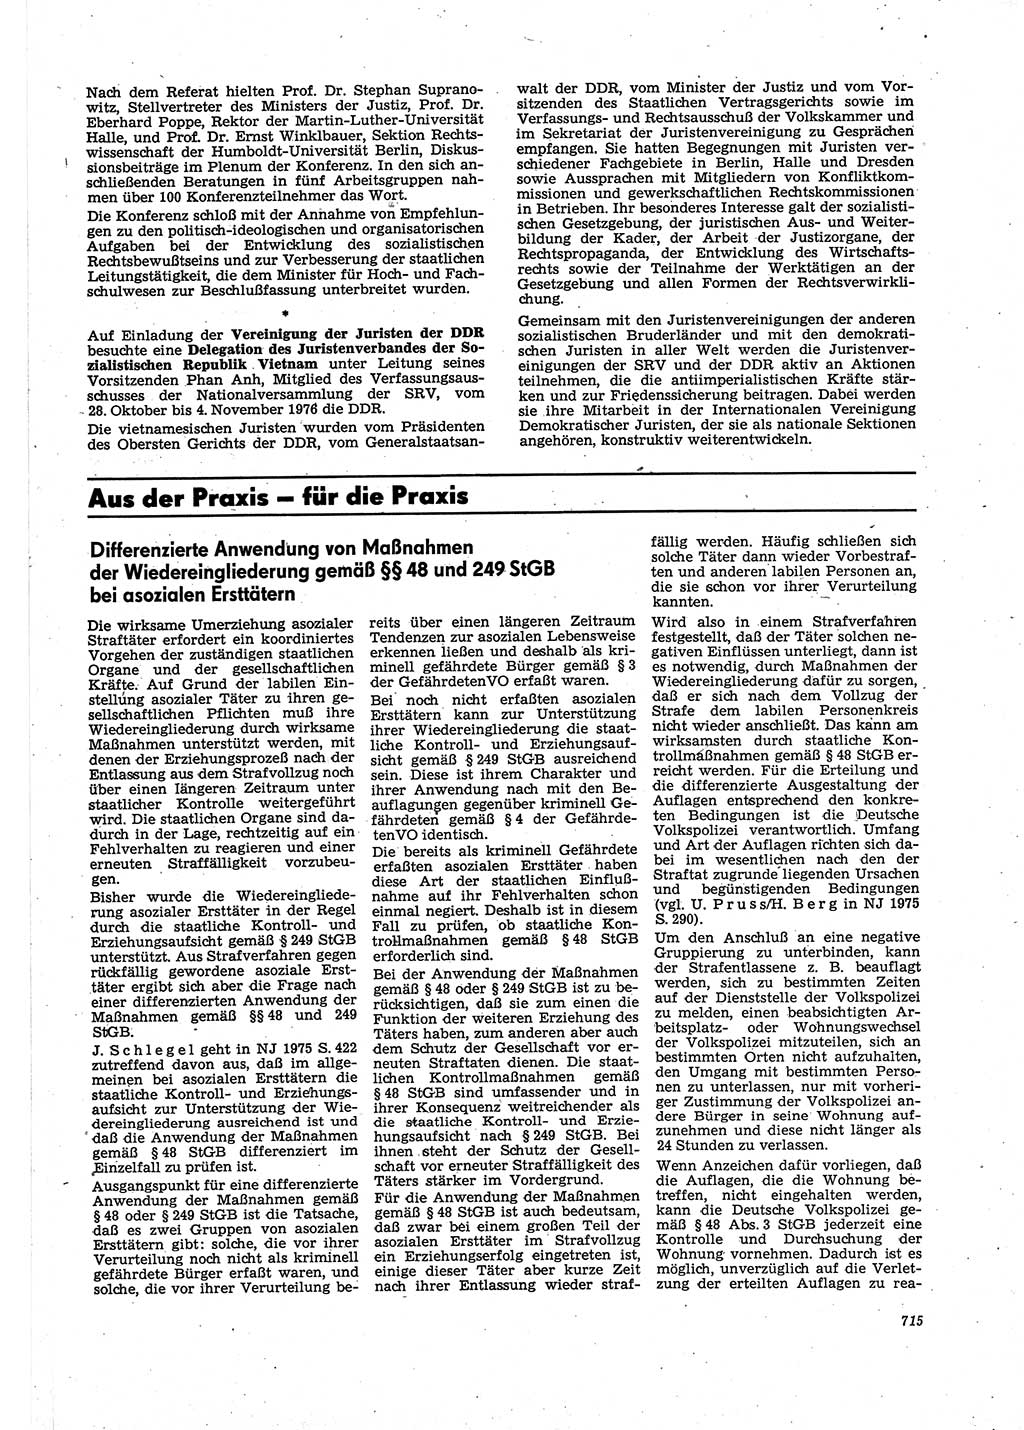 Neue Justiz (NJ), Zeitschrift für Recht und Rechtswissenschaft [Deutsche Demokratische Republik (DDR)], 30. Jahrgang 1976, Seite 715 (NJ DDR 1976, S. 715)